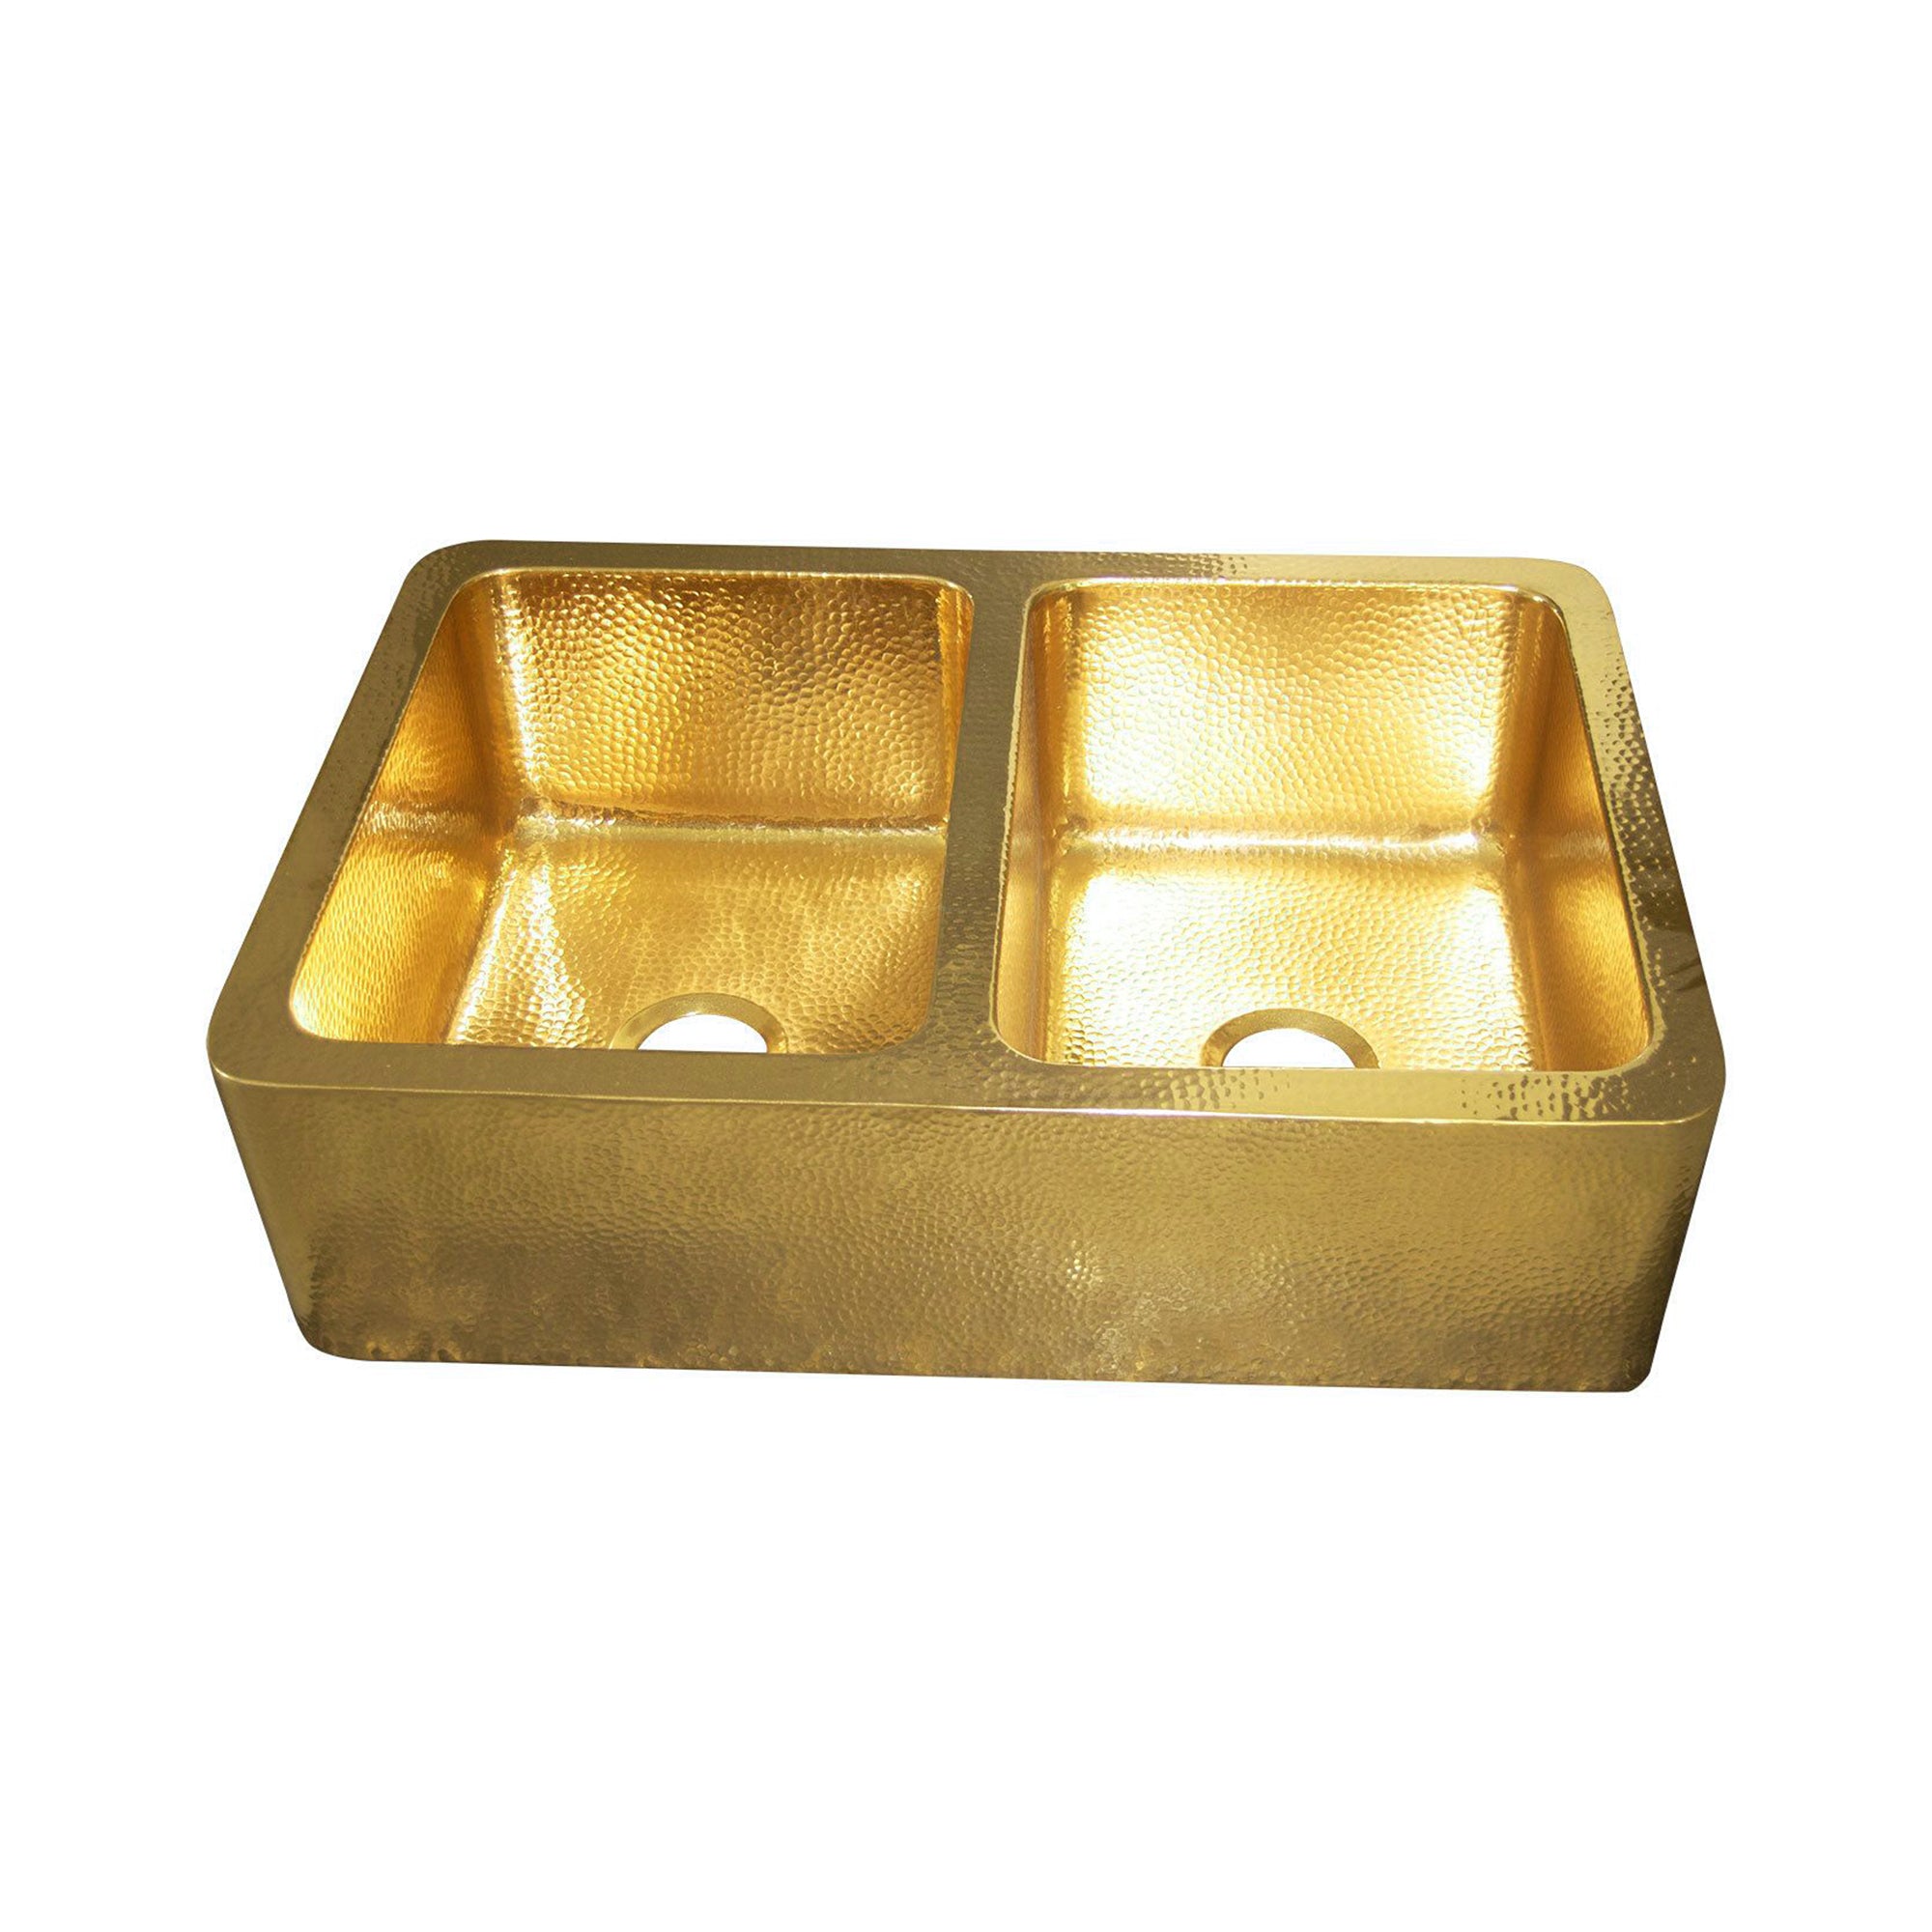 Double bowl brass kitchen sink